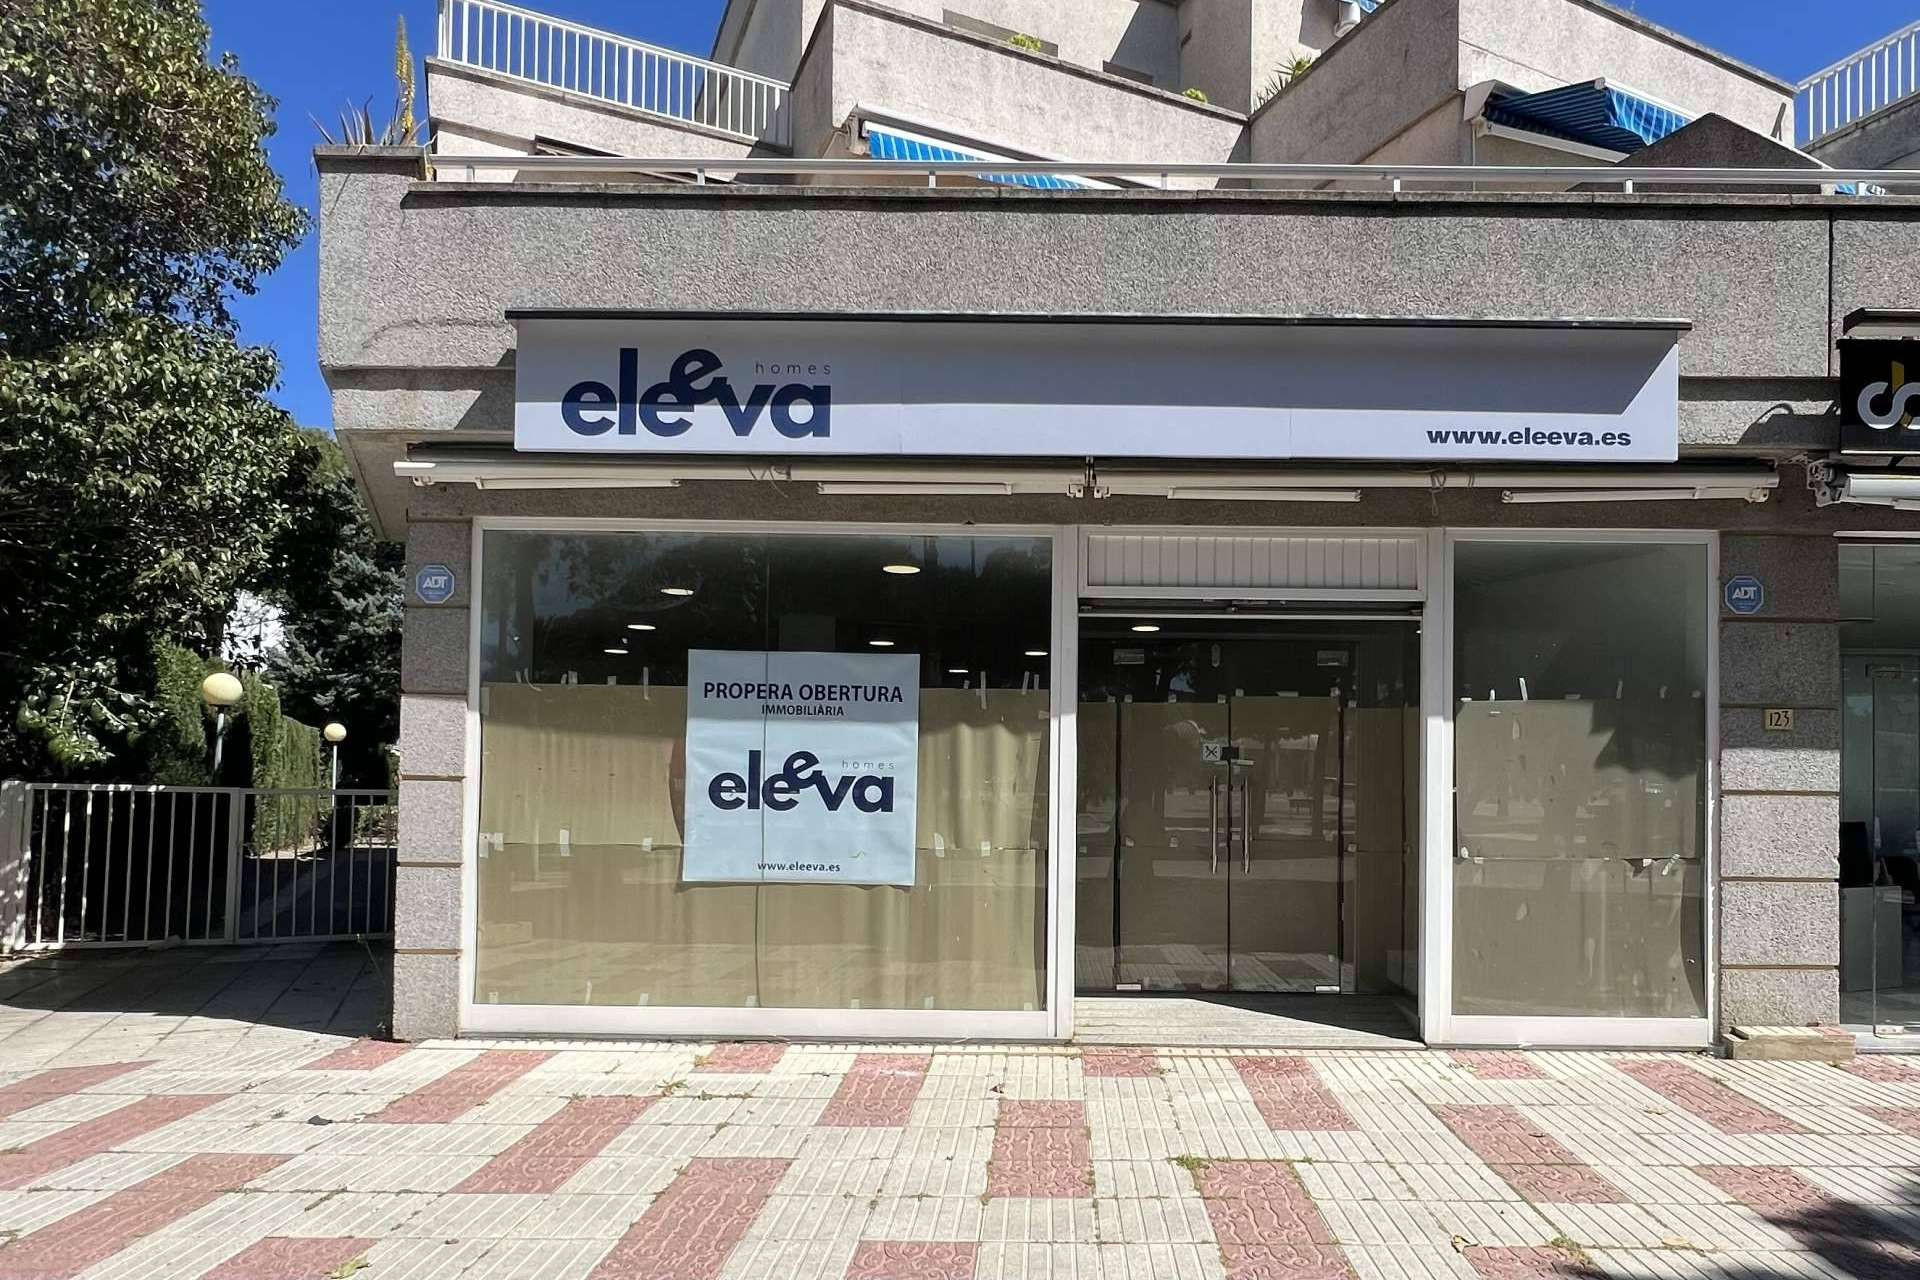  Inauguración de Eleeva Homes, la agencia inmobiliaria que revoluciona el sector en Platja d'Aro 